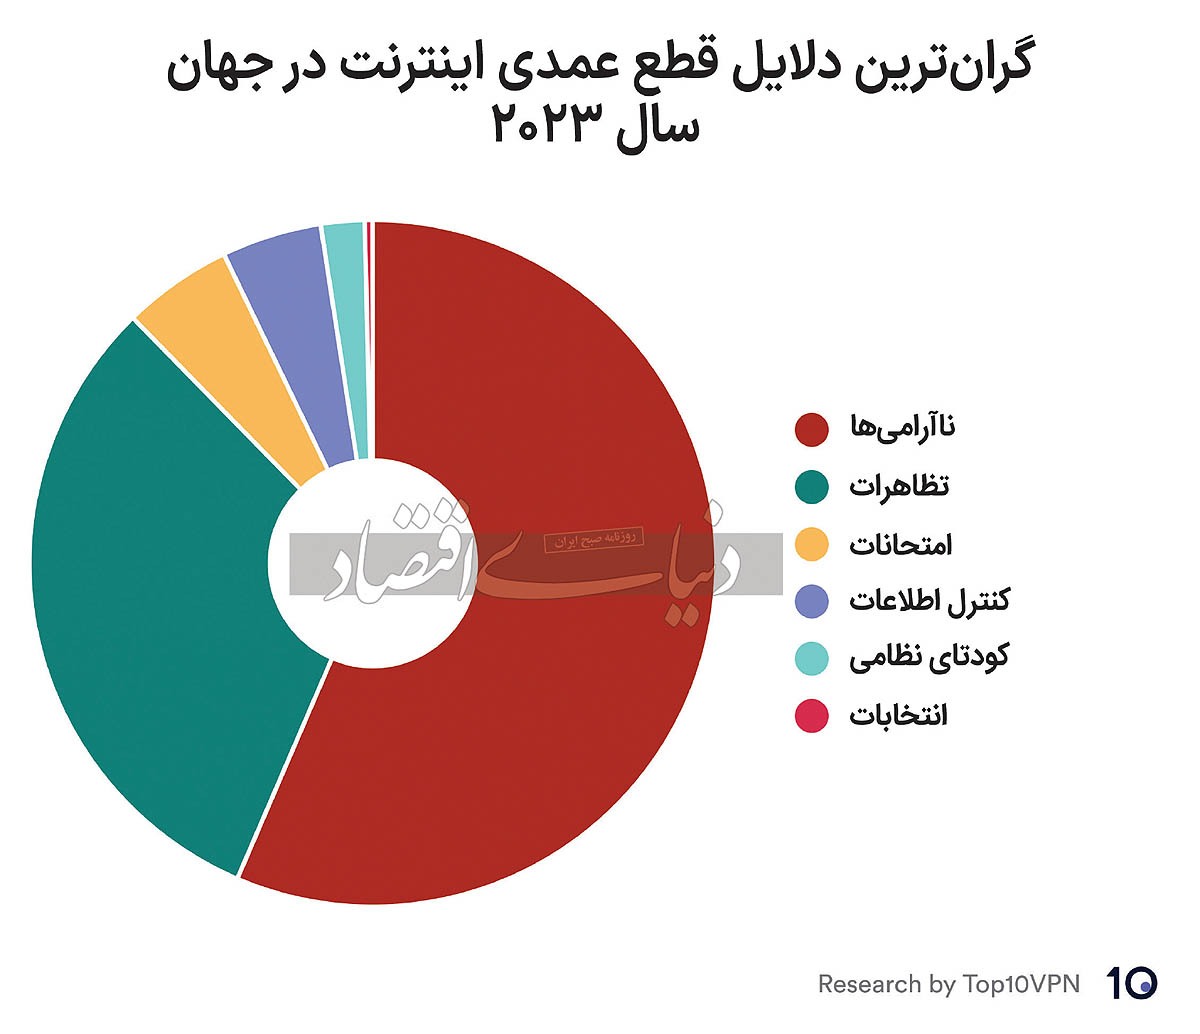 ایران؛ سومین کشور متضرر از قطع اینترنت در جهان / روسیه صدرنشین است